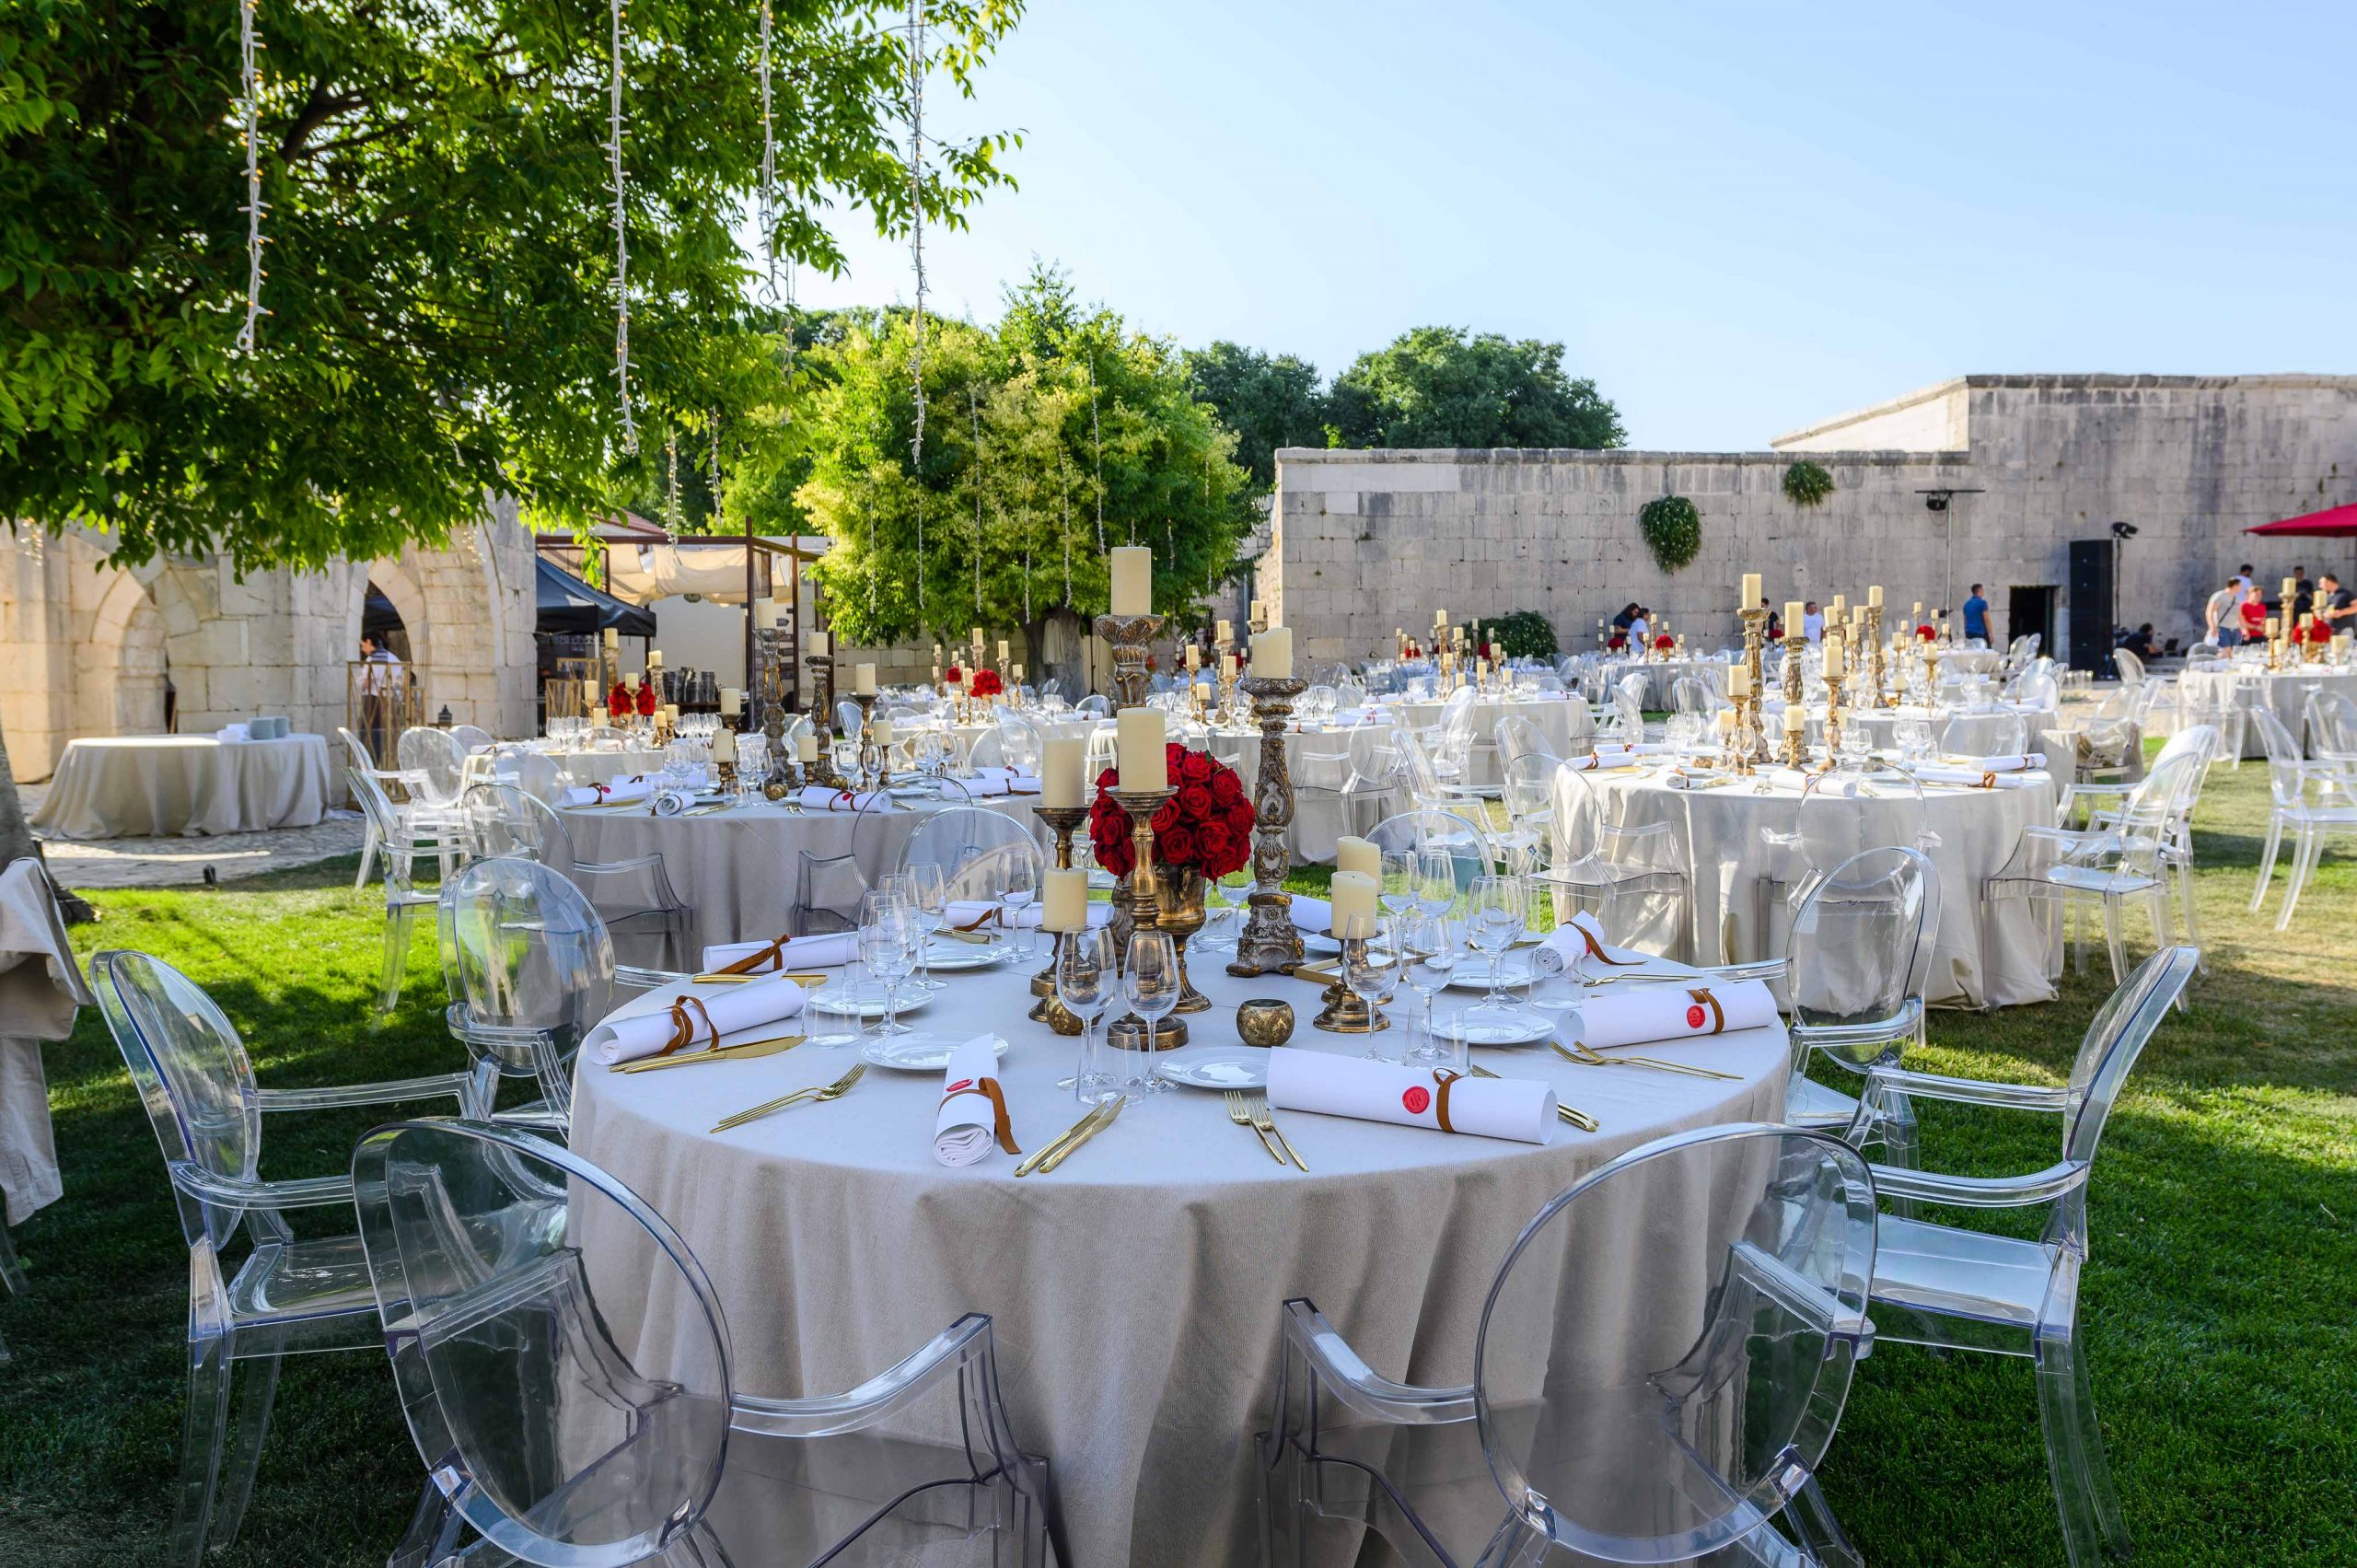 Održana je svečanost uručenja Michelin priznanja za 2022. najboljim hrvatskim restoranima